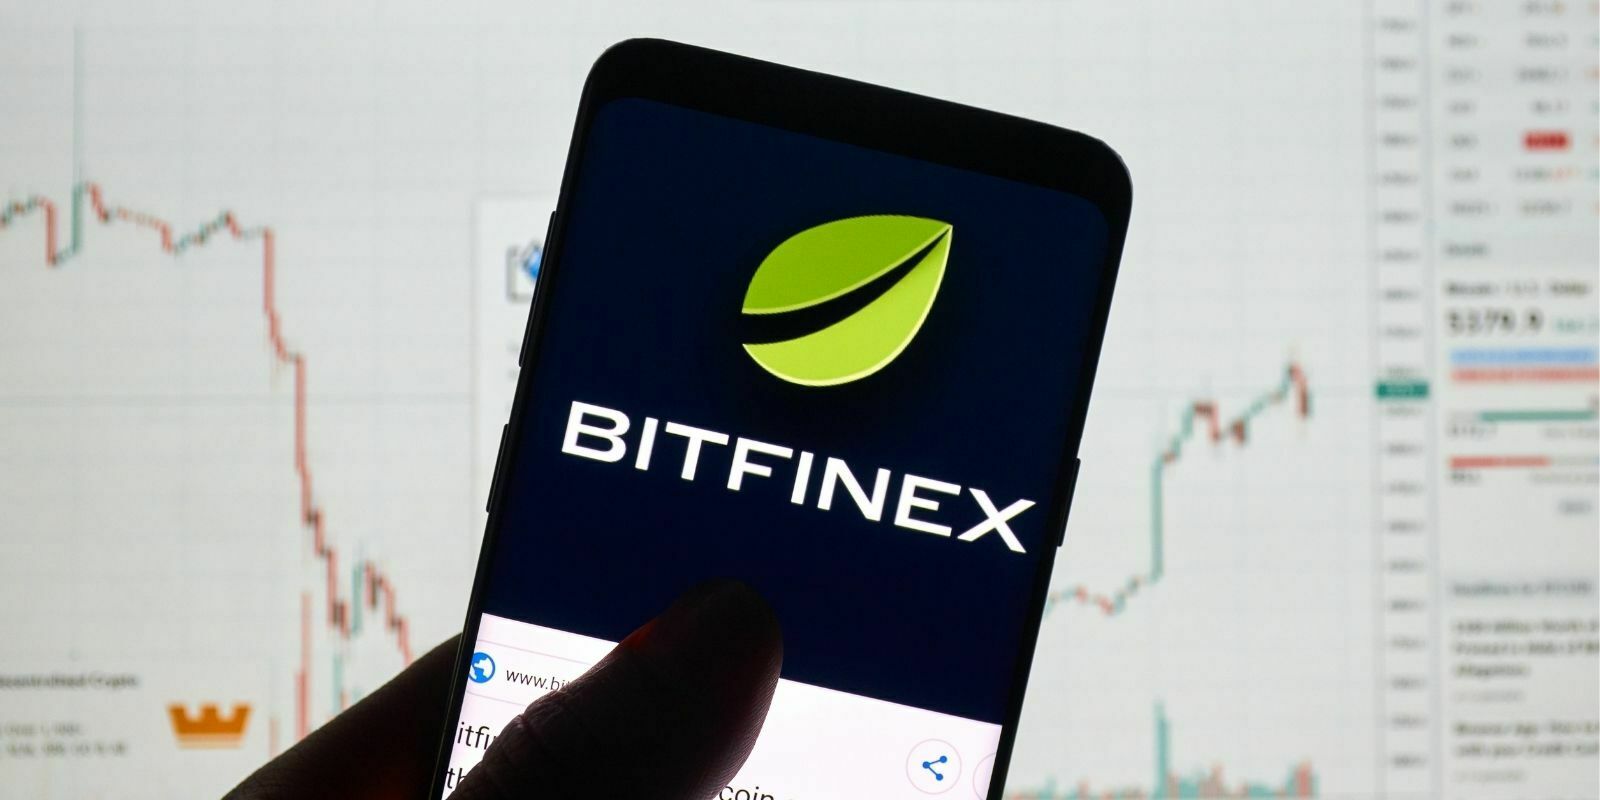 Bitfinex lance des indices boursiers sur actions à négocier en Tether